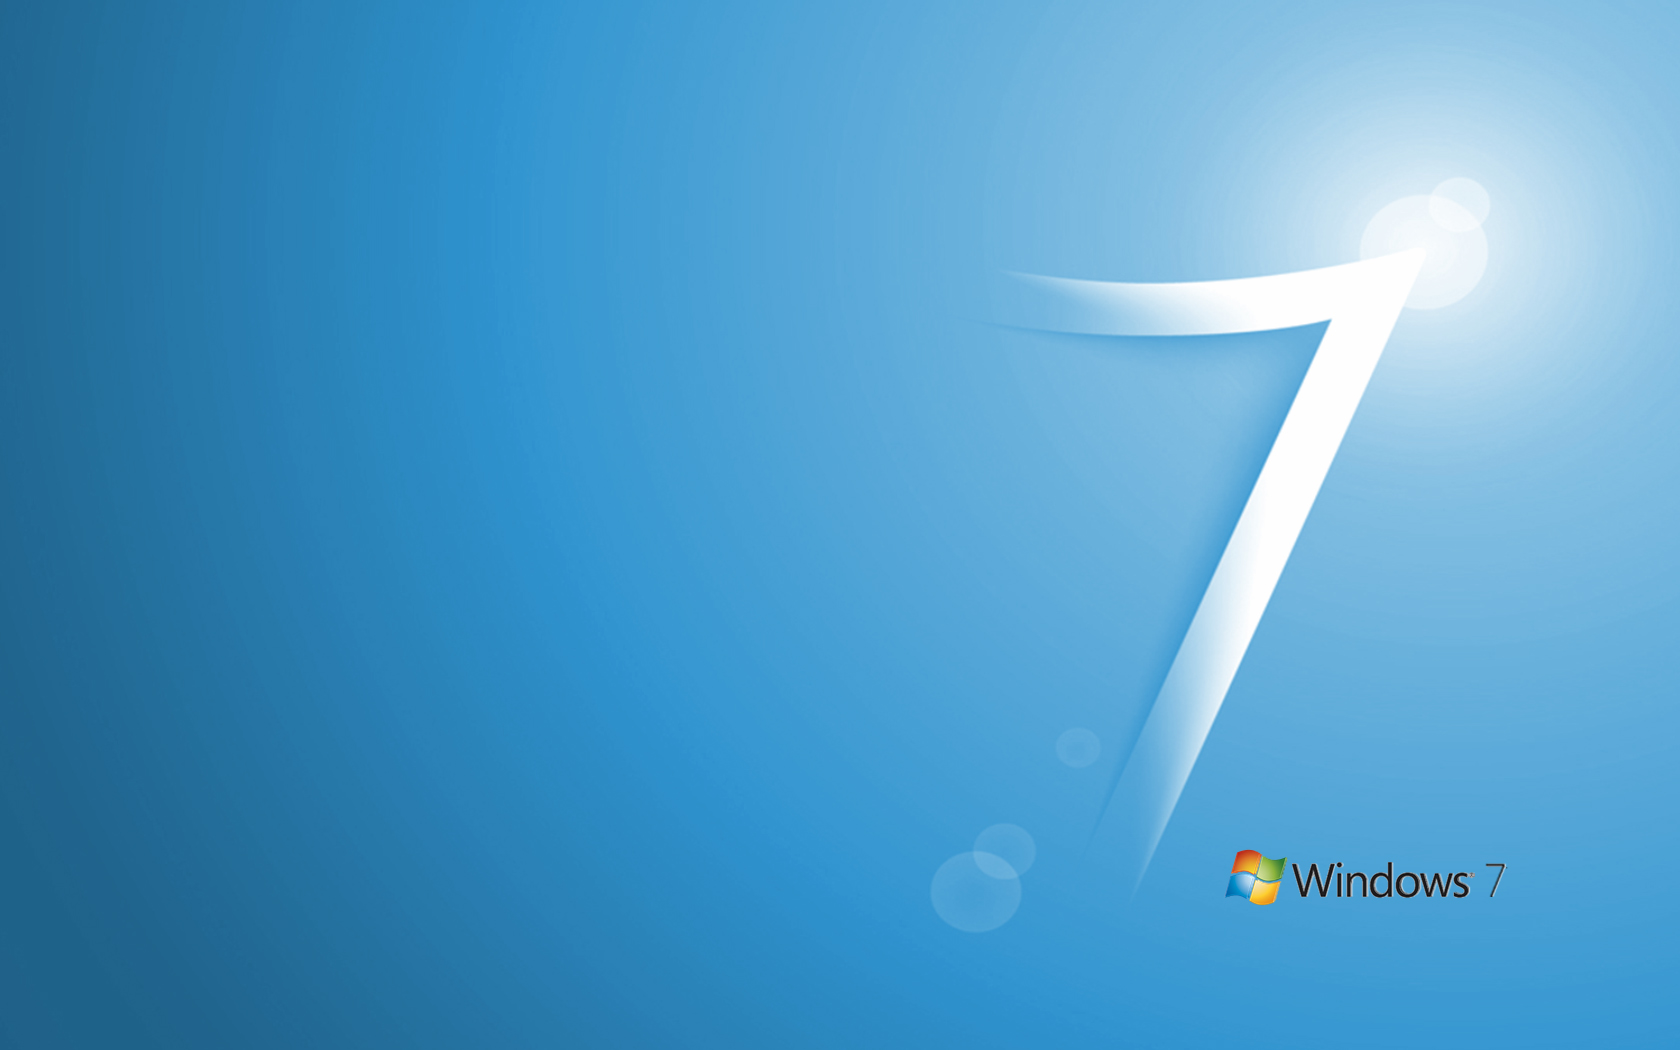 壁纸1680x1050Windows 7新Logo壁纸壁纸 Windows 7新Logo壁纸壁纸 Windows 7新Logo壁纸图片 Windows 7新Logo壁纸素材 其他壁纸 其他图库 其他图片素材桌面壁纸